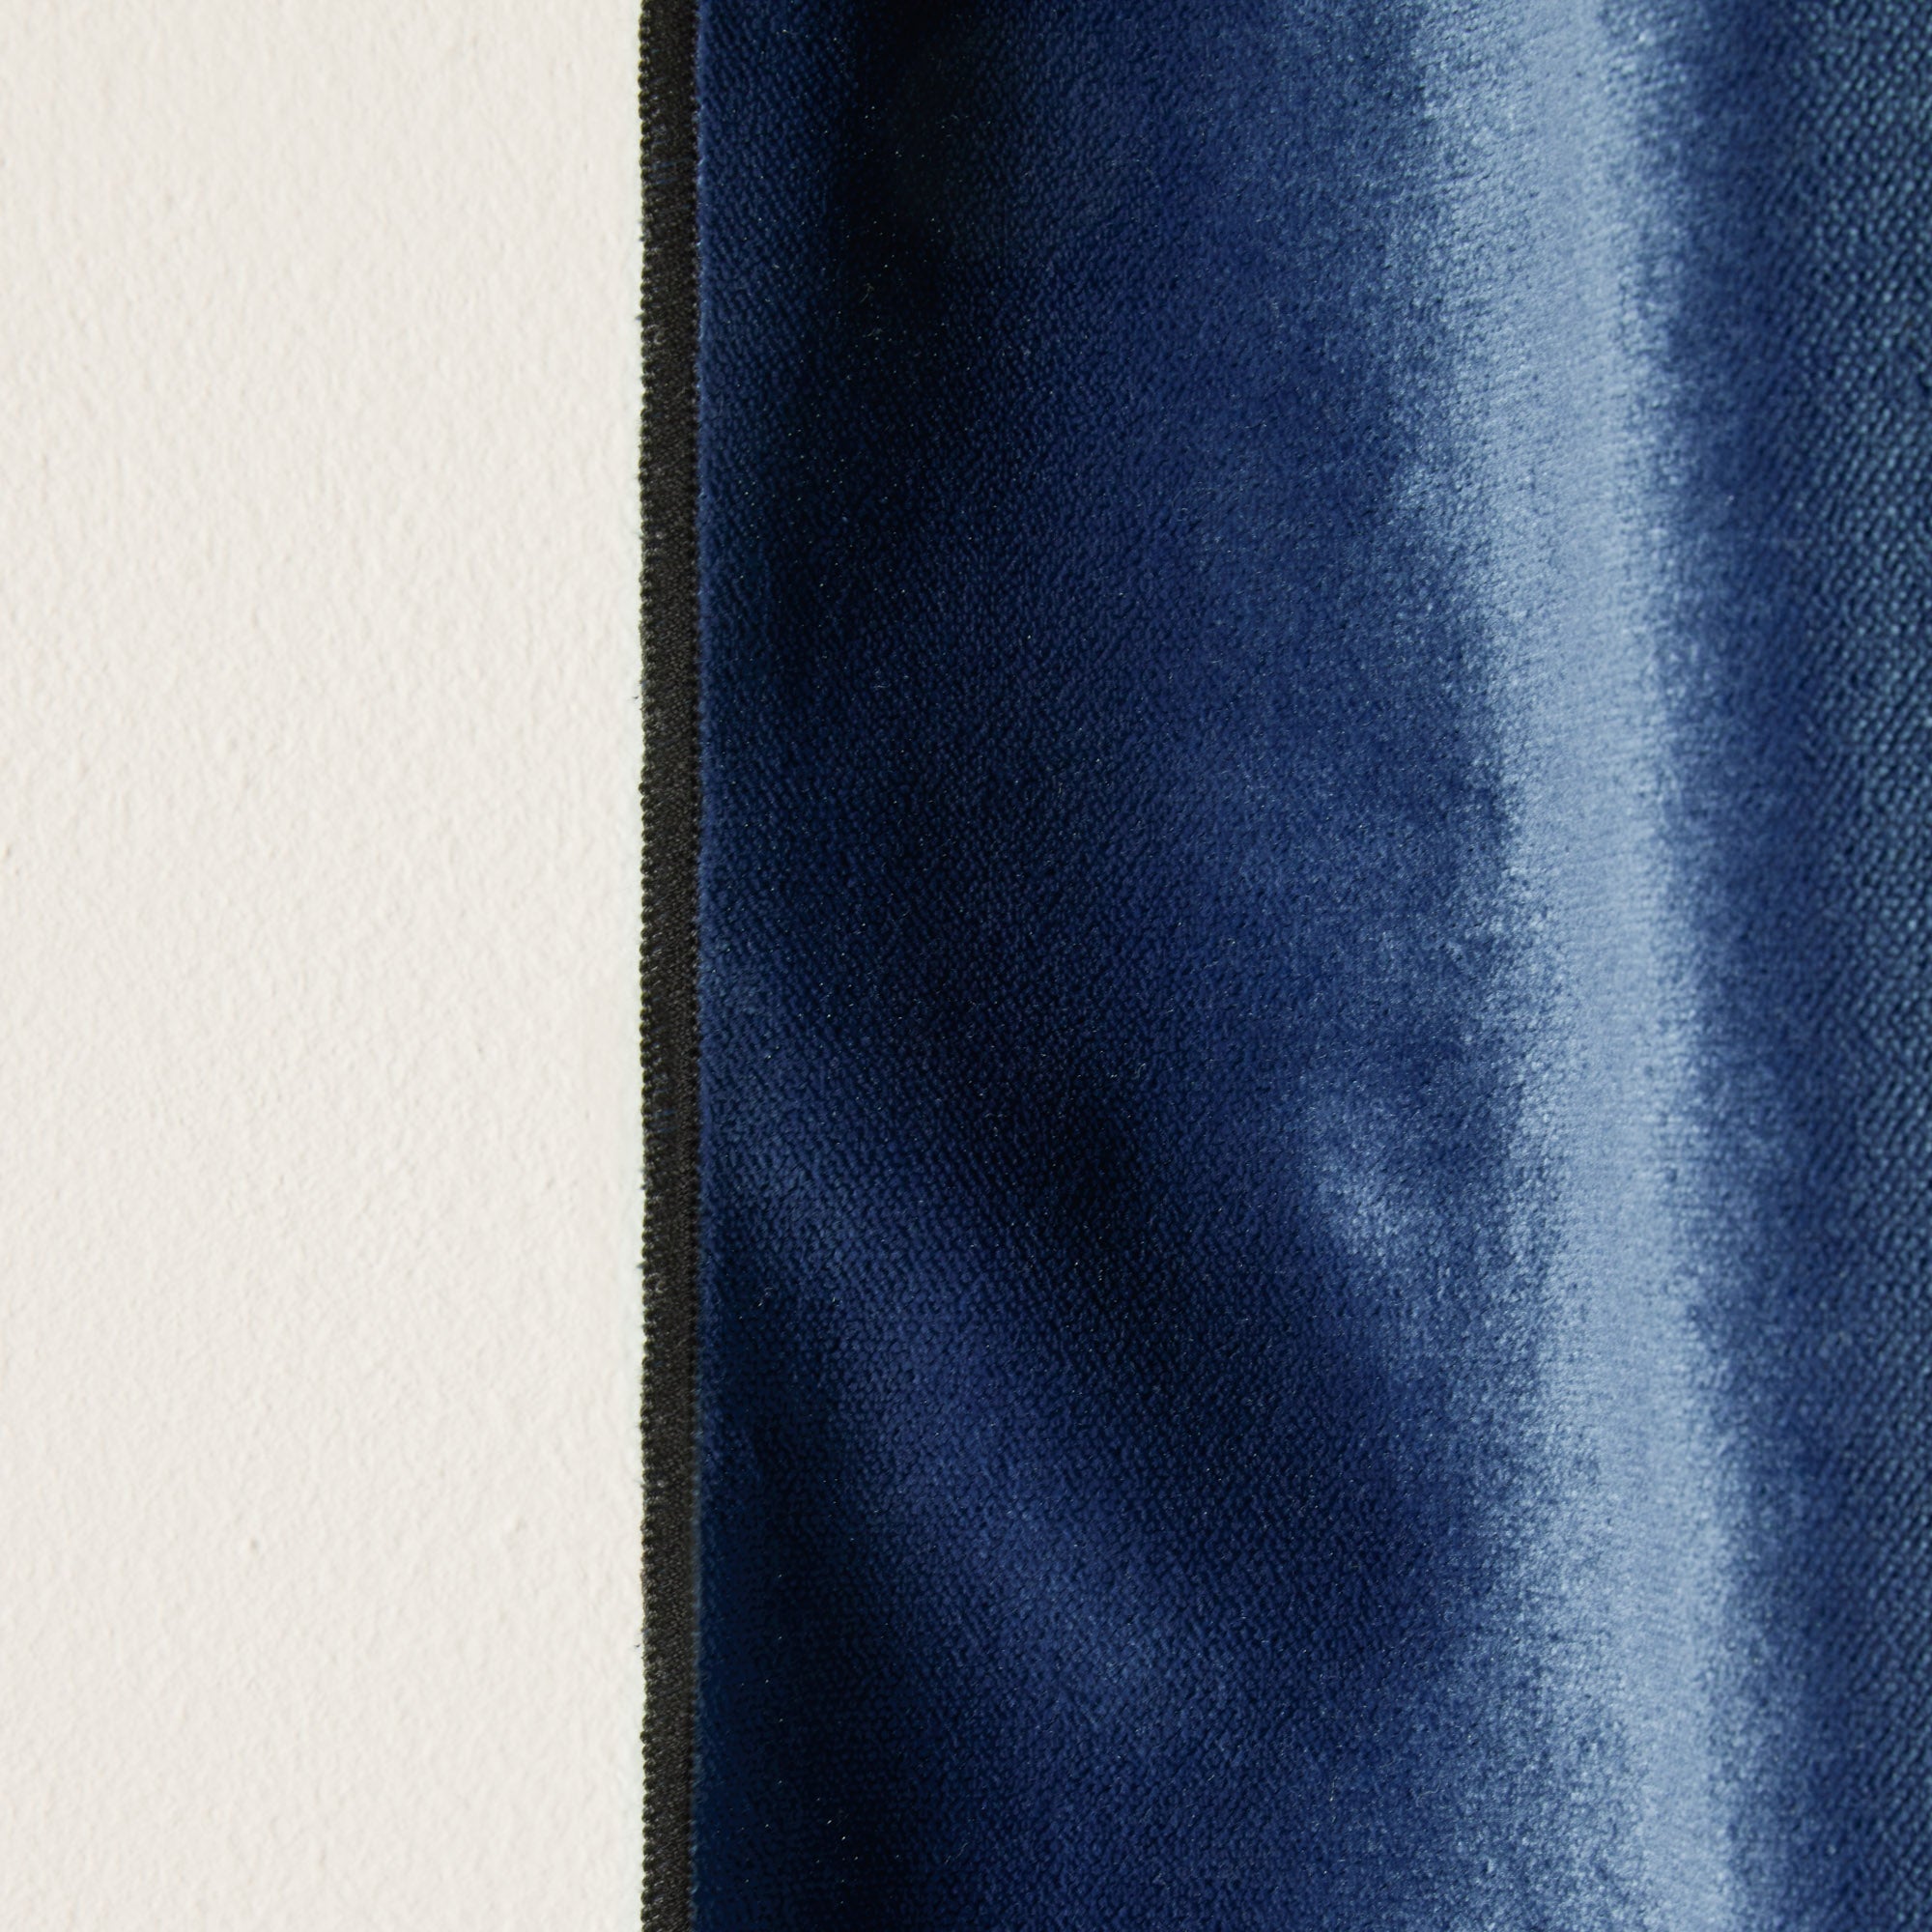 Housse de tête de lit DARIO bleu nuit et bourdon noir - Madura